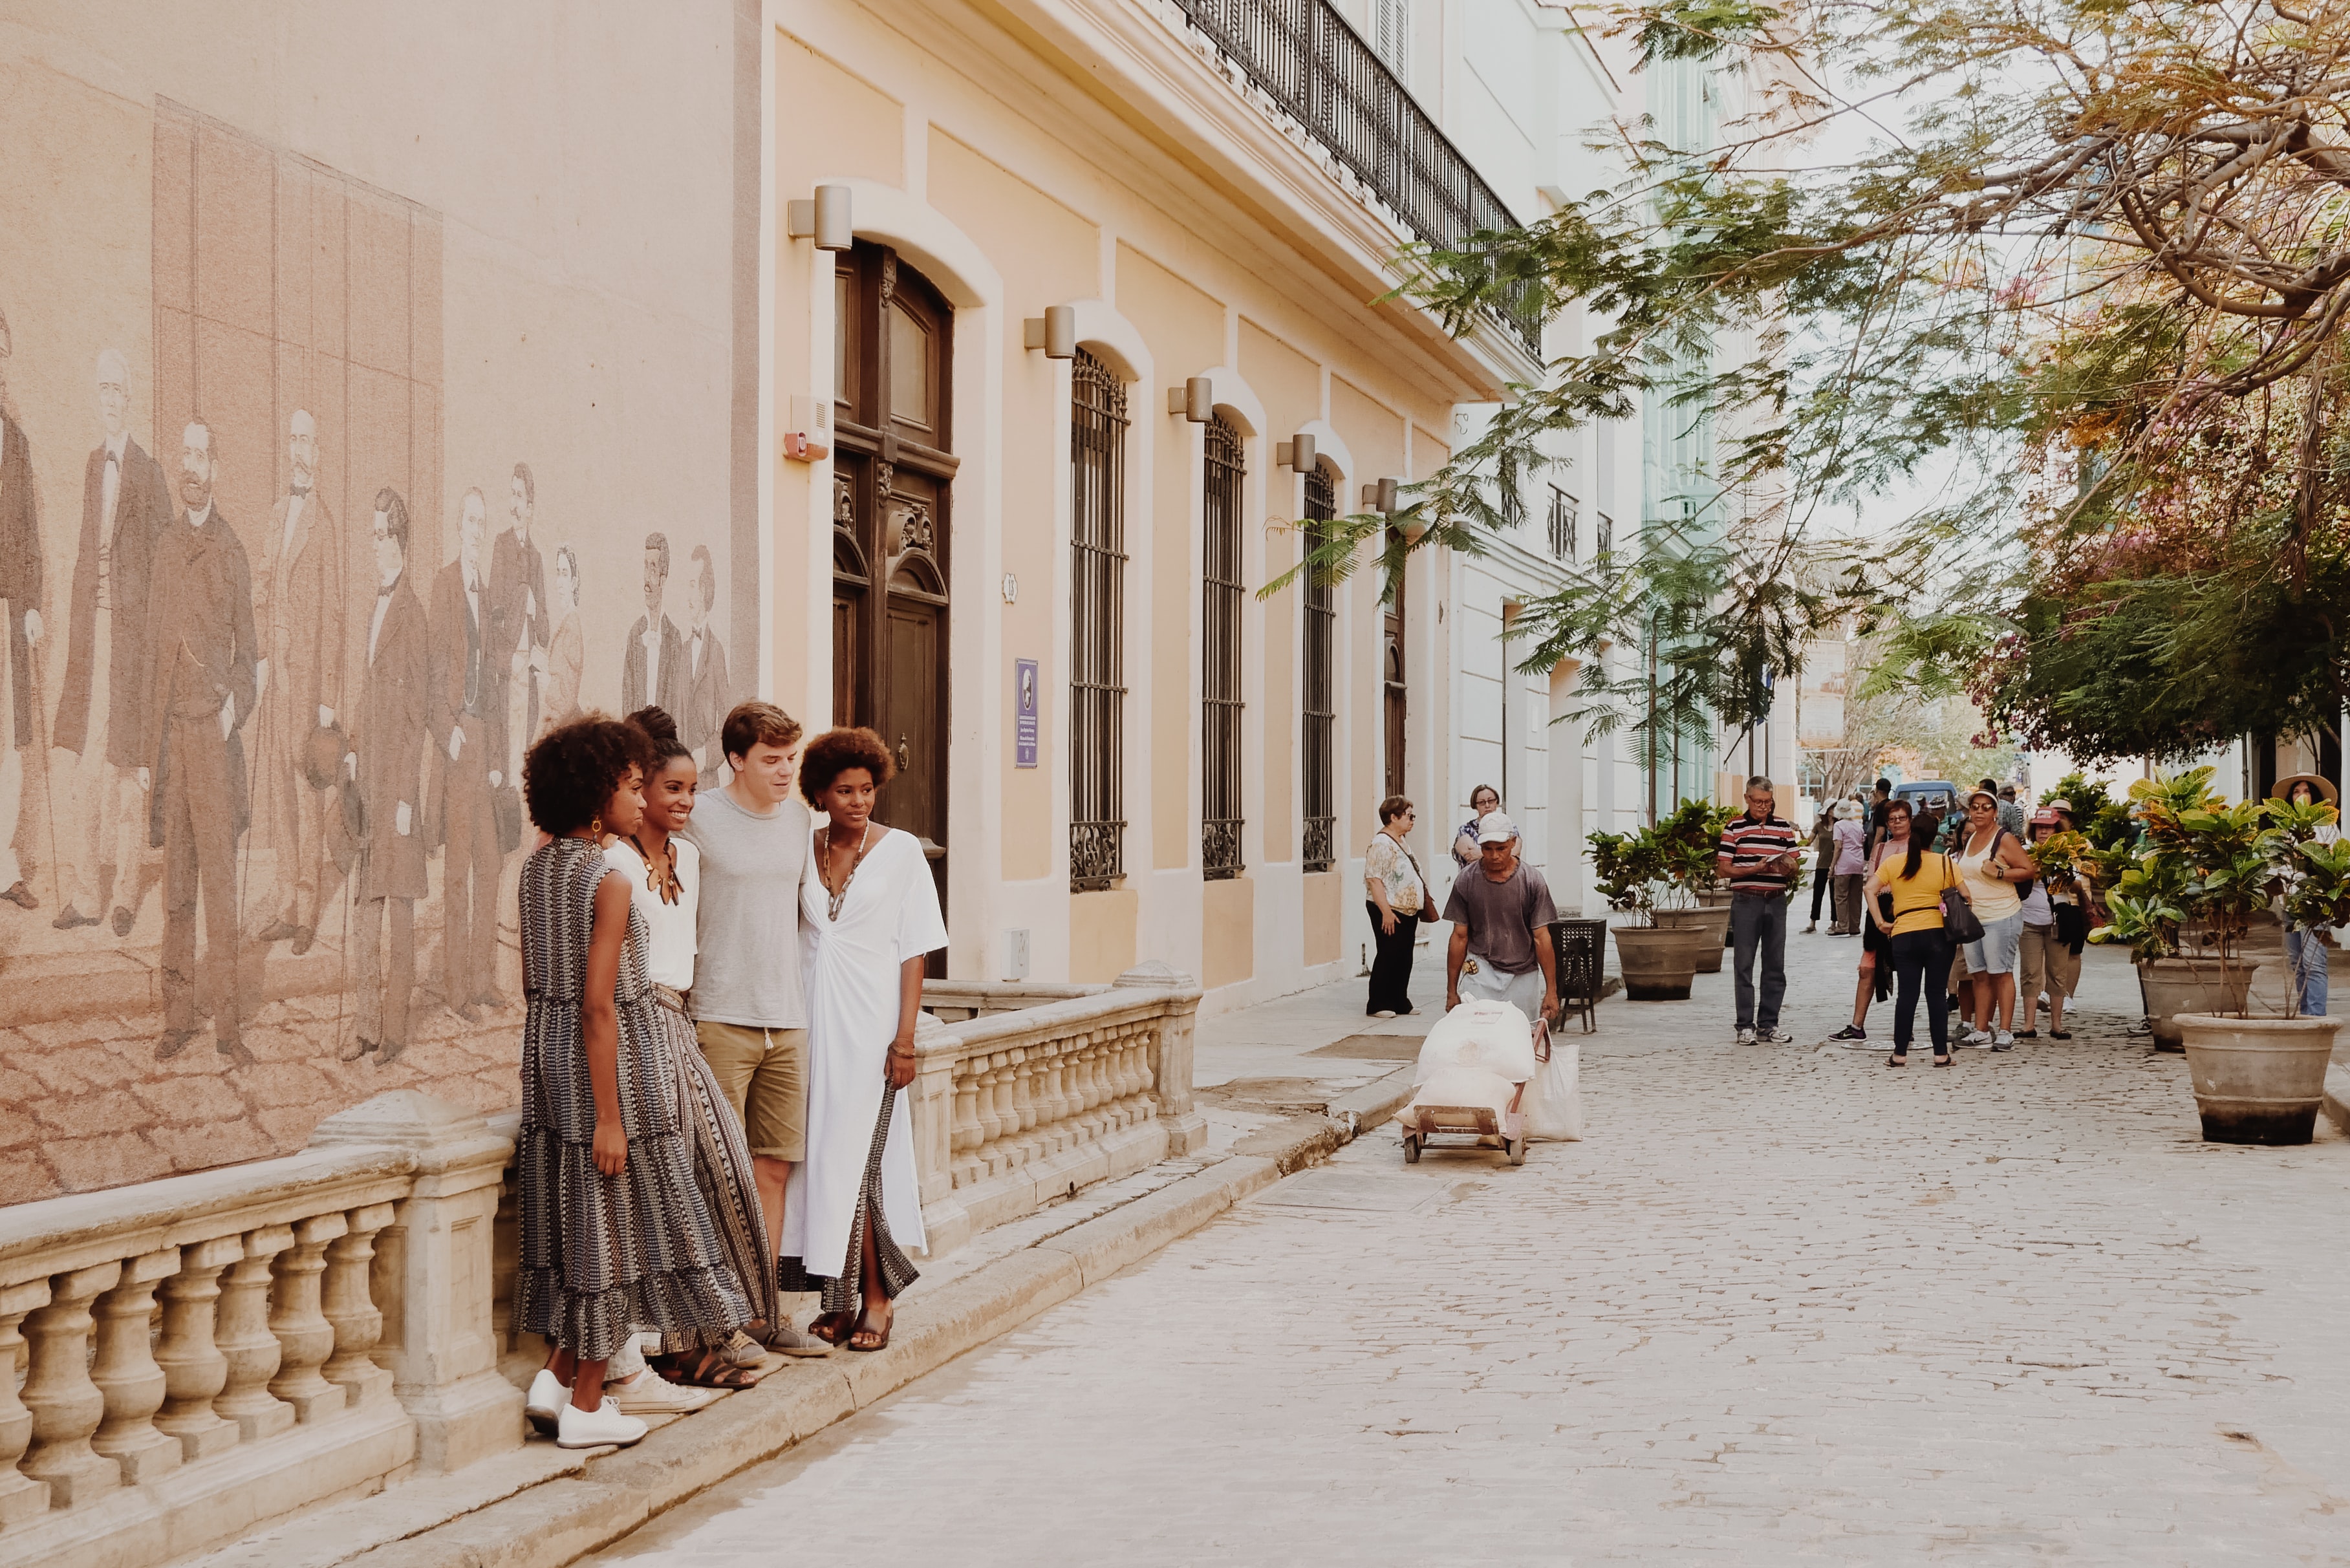 Calles en La Habana, viajes a Cuba